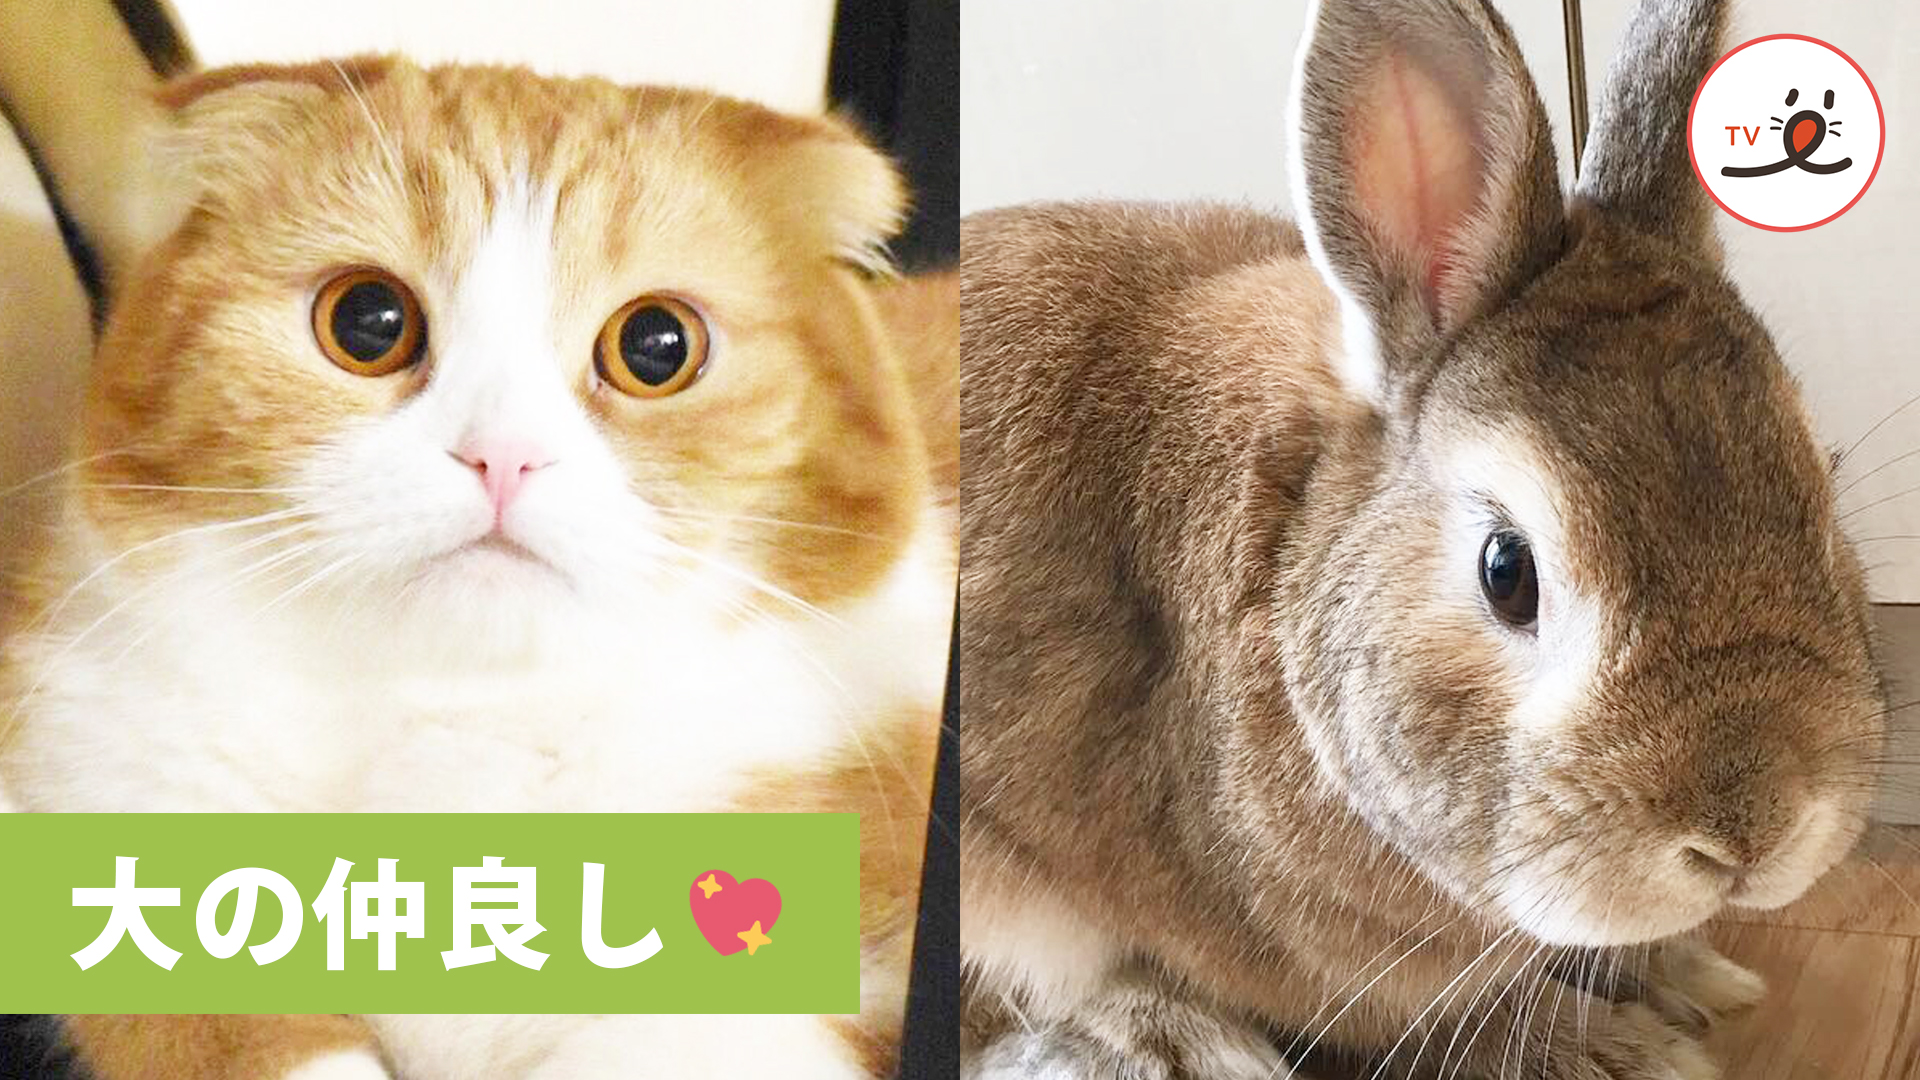 種を超えた信頼関係 とっても仲良しなウサギとネコ Peco Tv Yahoo Japan